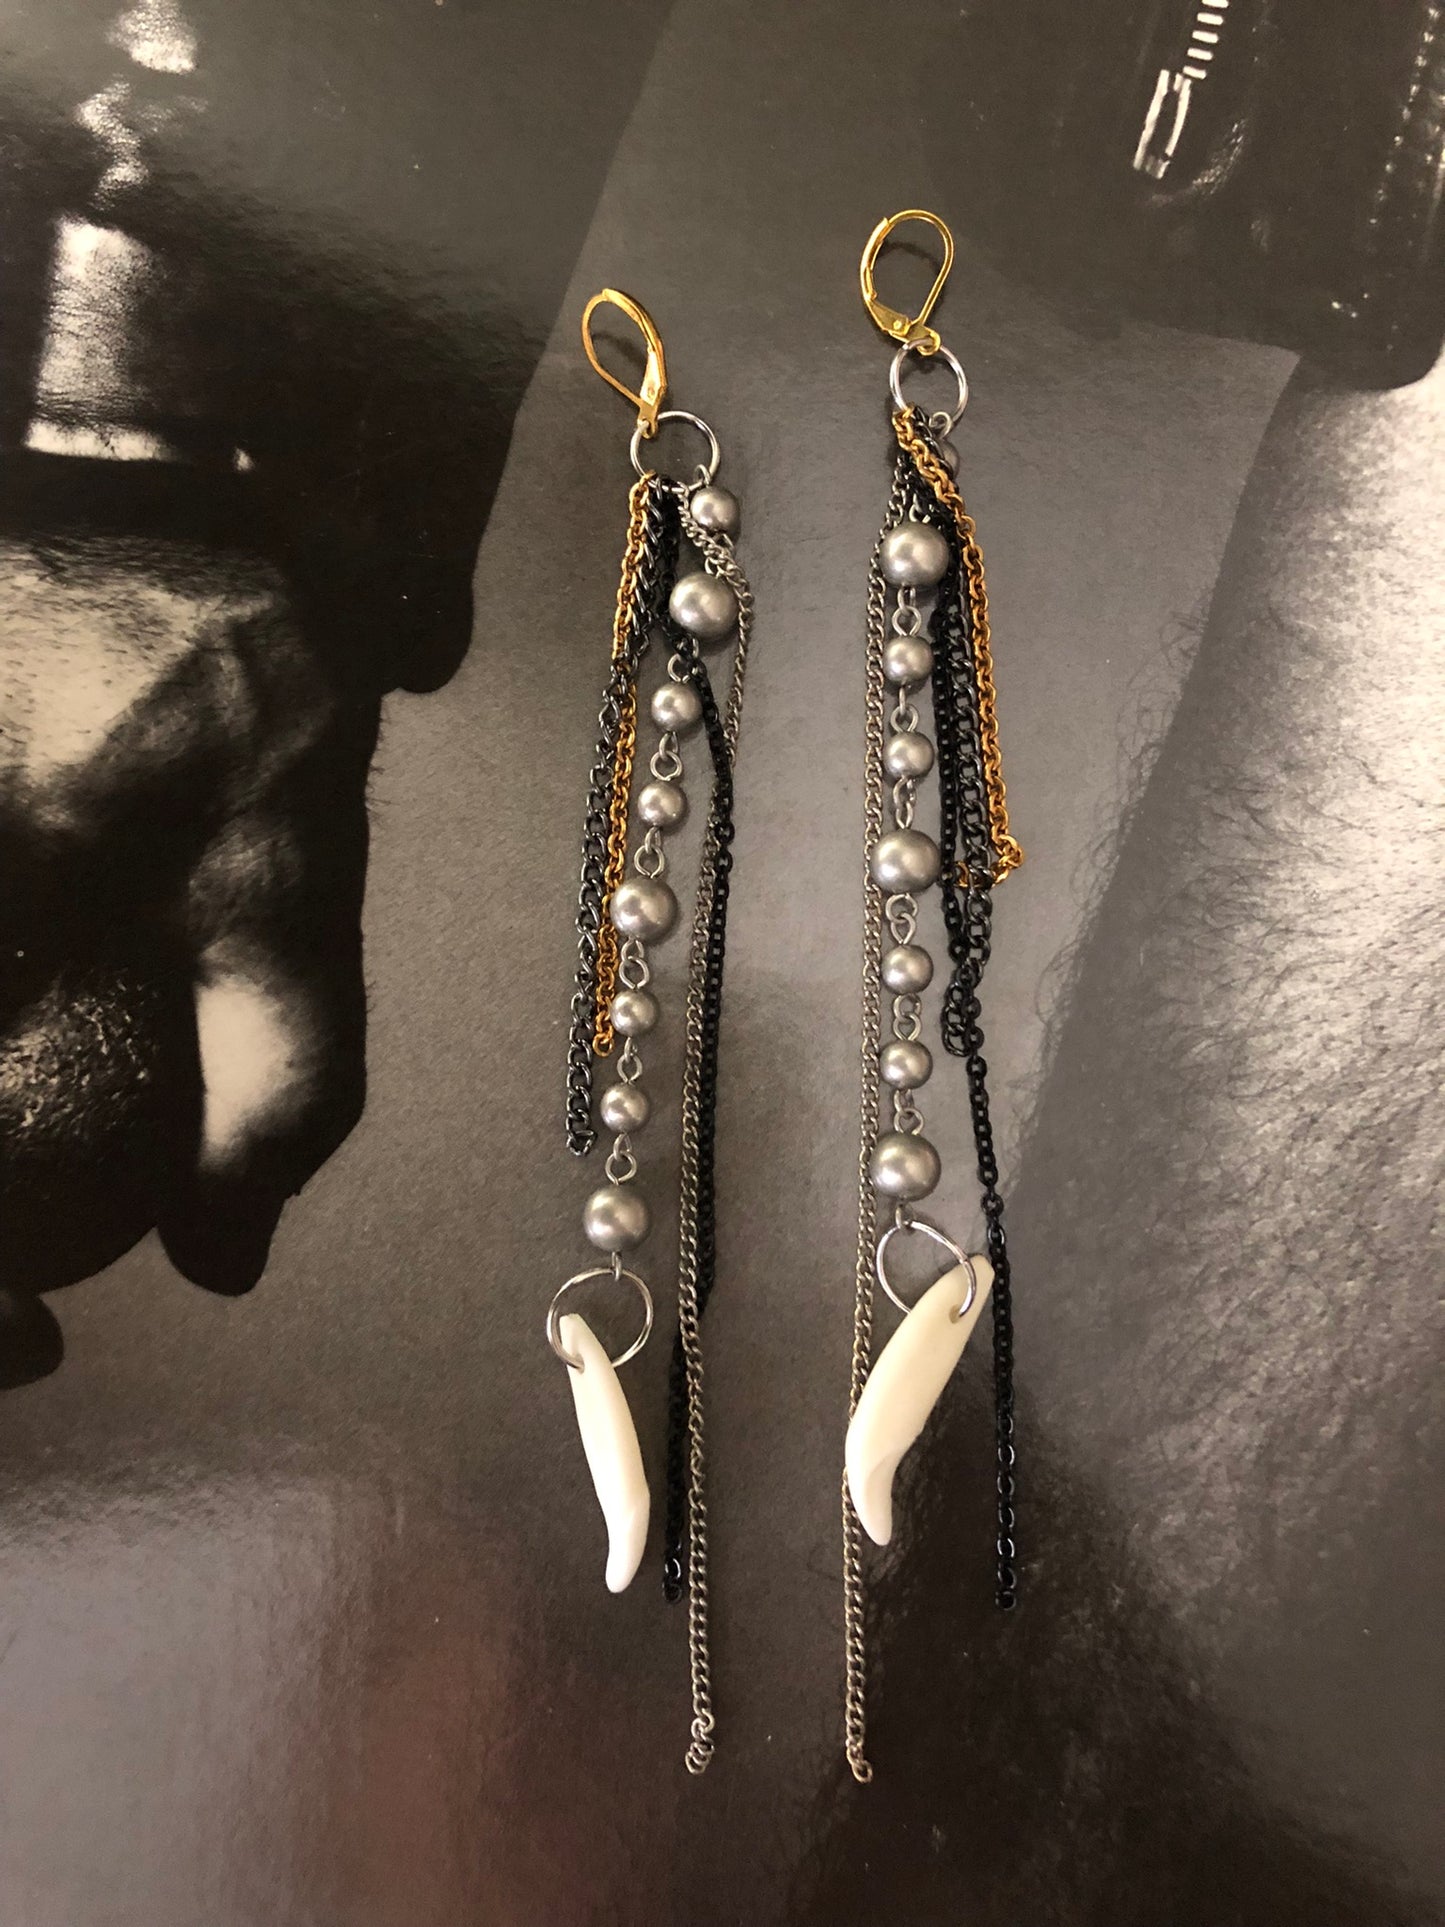 OOAK mixed metal tooth earrings